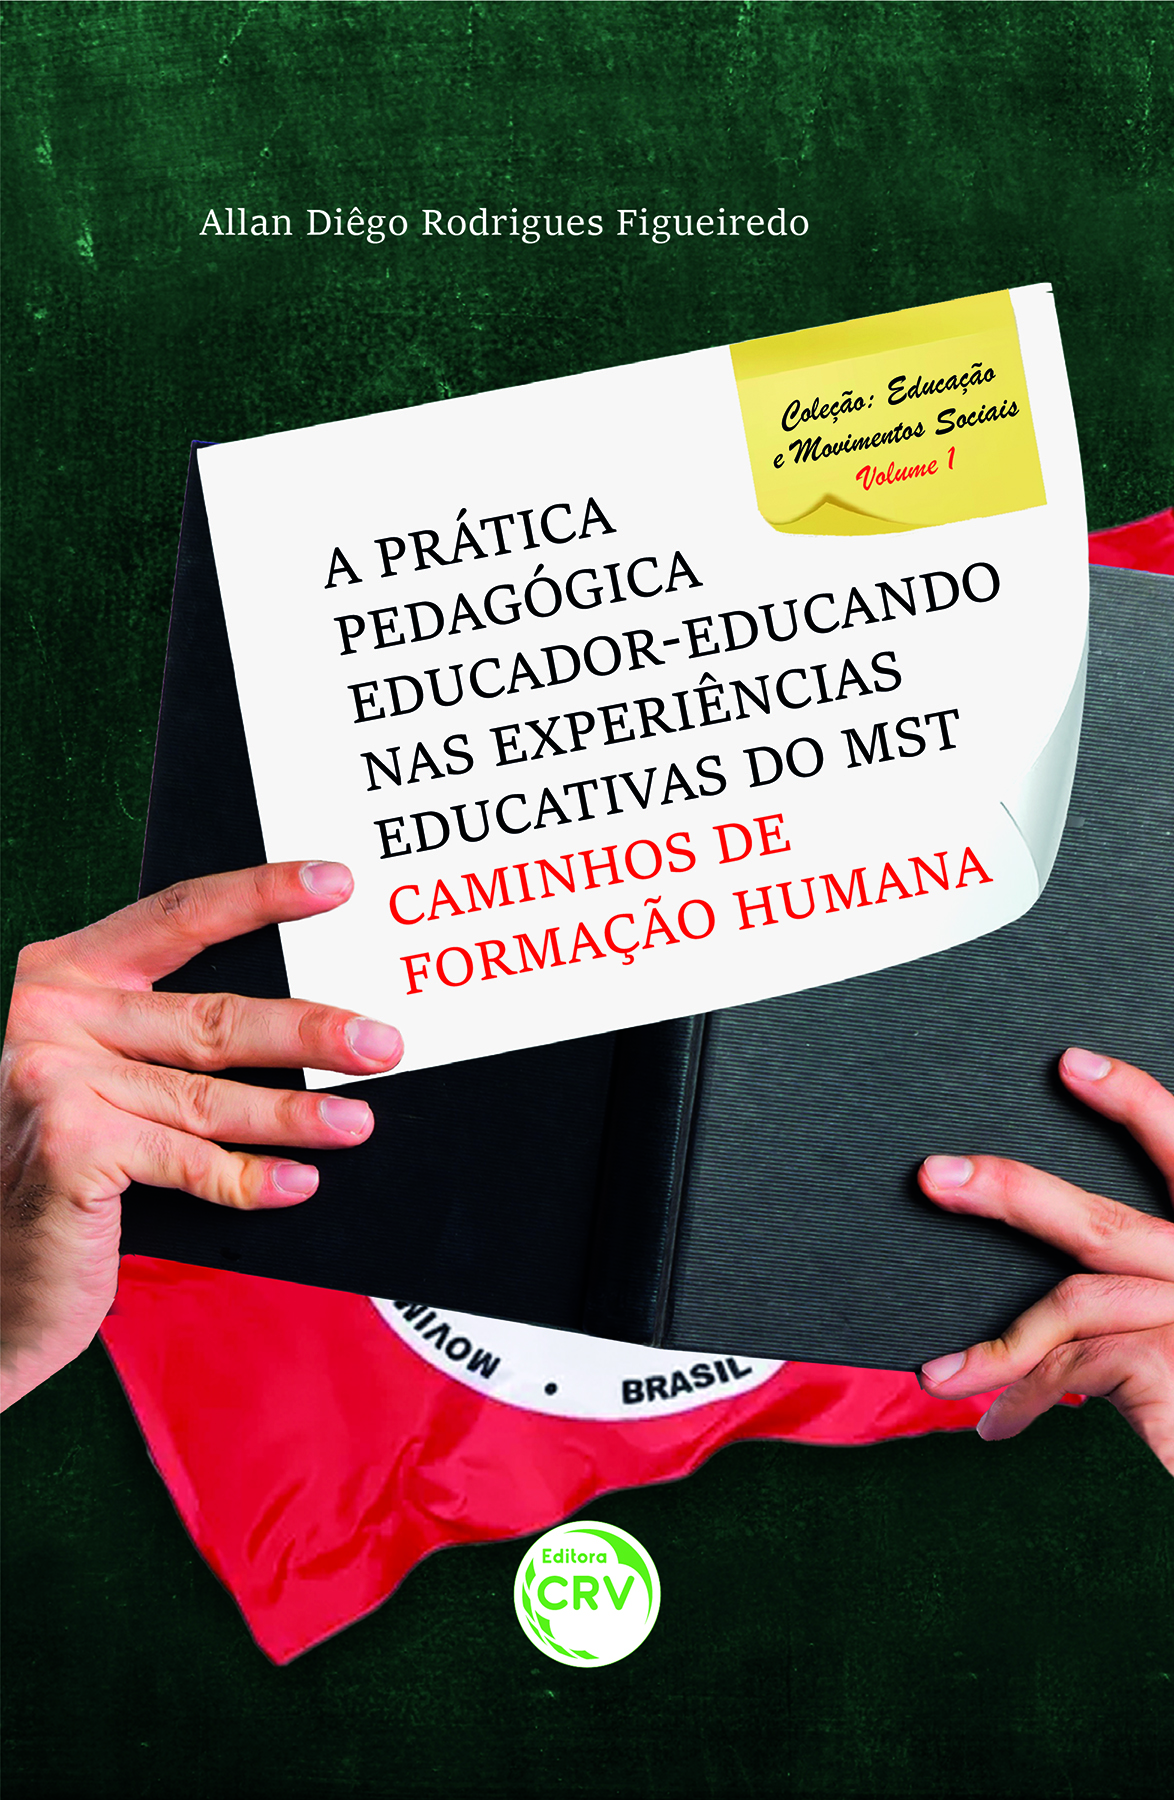 Capa do livro: A prática pedagógica educador-educando nas experiências educativas do MST:<br> Caminhos de formação humana